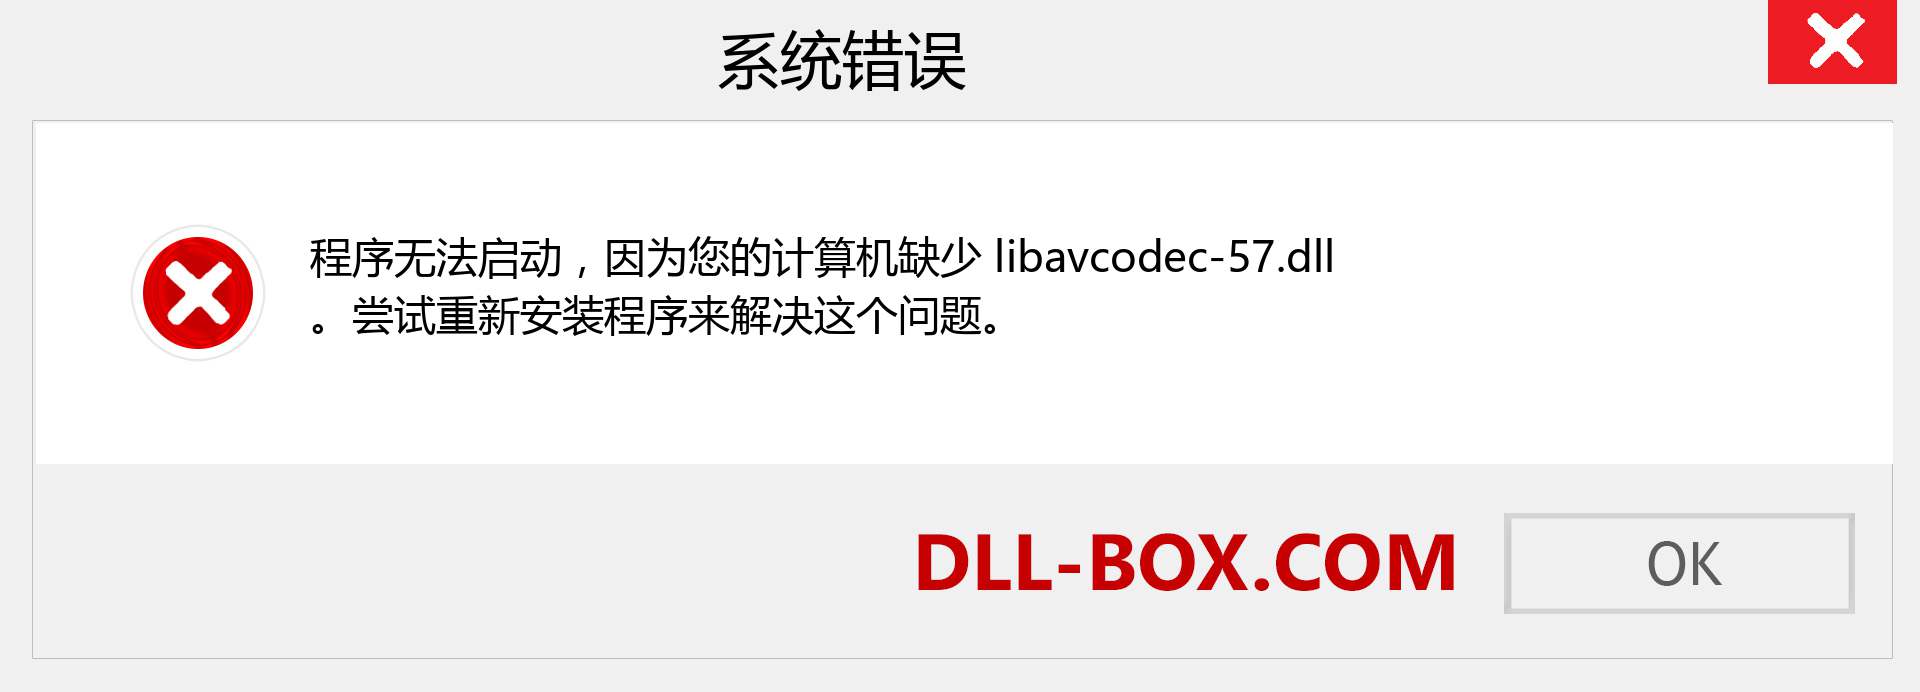 libavcodec-57.dll 文件丢失？。 适用于 Windows 7、8、10 的下载 - 修复 Windows、照片、图像上的 libavcodec-57 dll 丢失错误